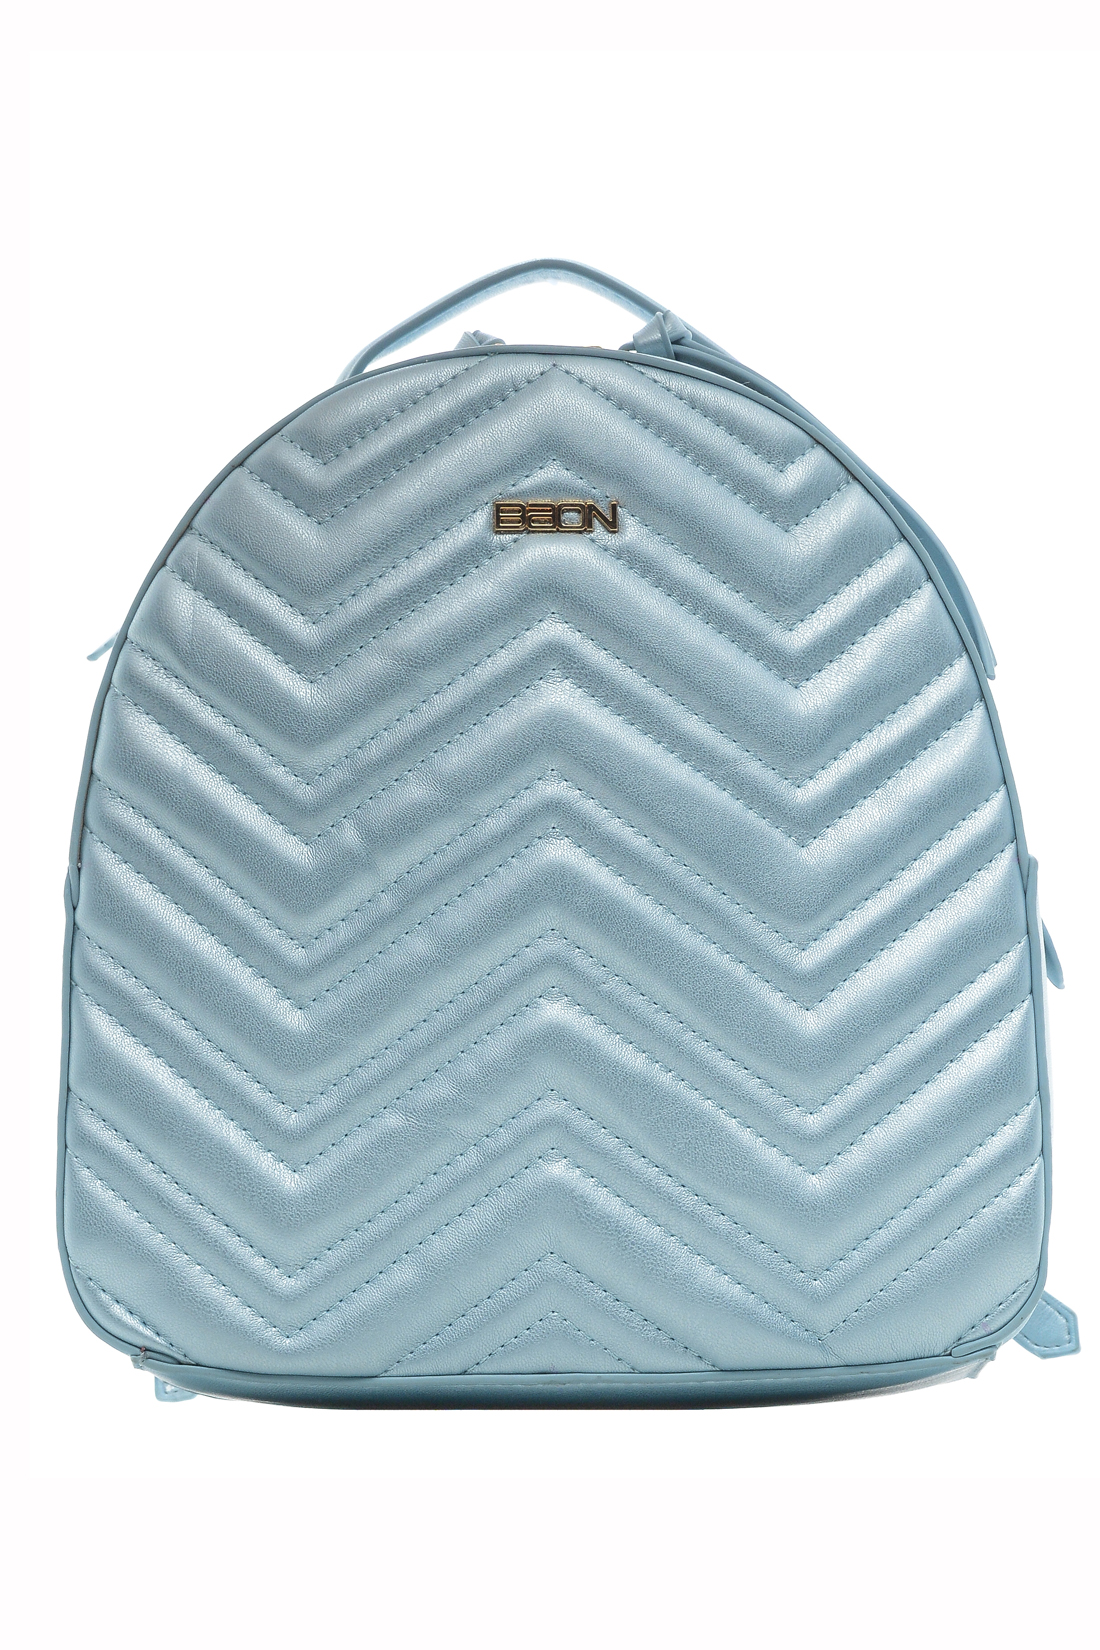 Рюкзак с перламутровым эффектом (арт. baon B379001), размер Без/раз, цвет голубой Рюкзак с перламутровым эффектом (арт. baon B379001) - фото 1